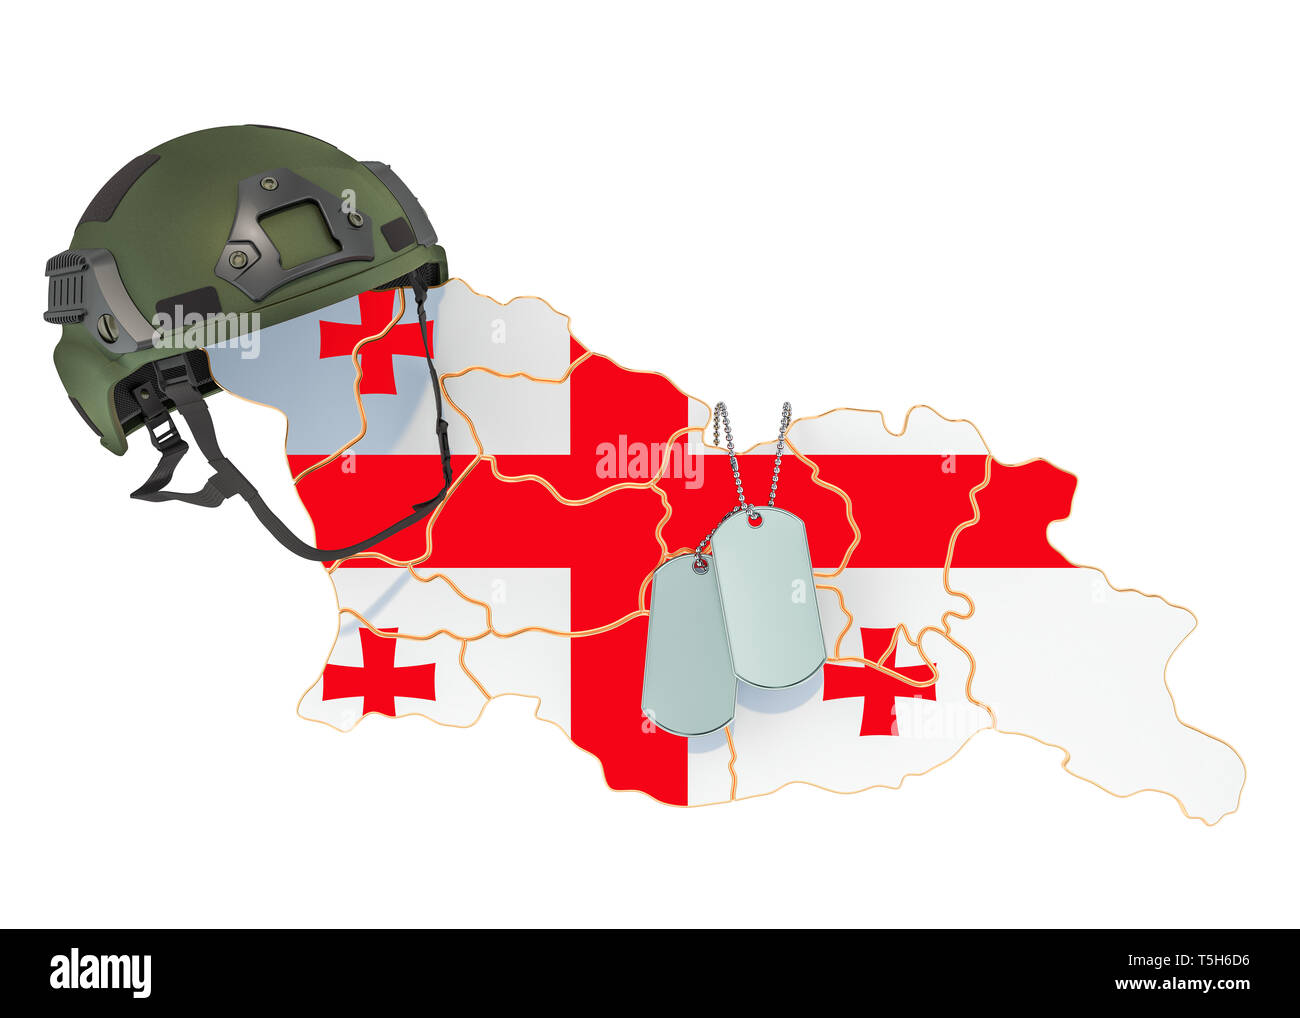 Georgische militärische Kraft, Armee oder Krieg Konzept. 3D-Rendering auf weißem Hintergrund Stockfoto